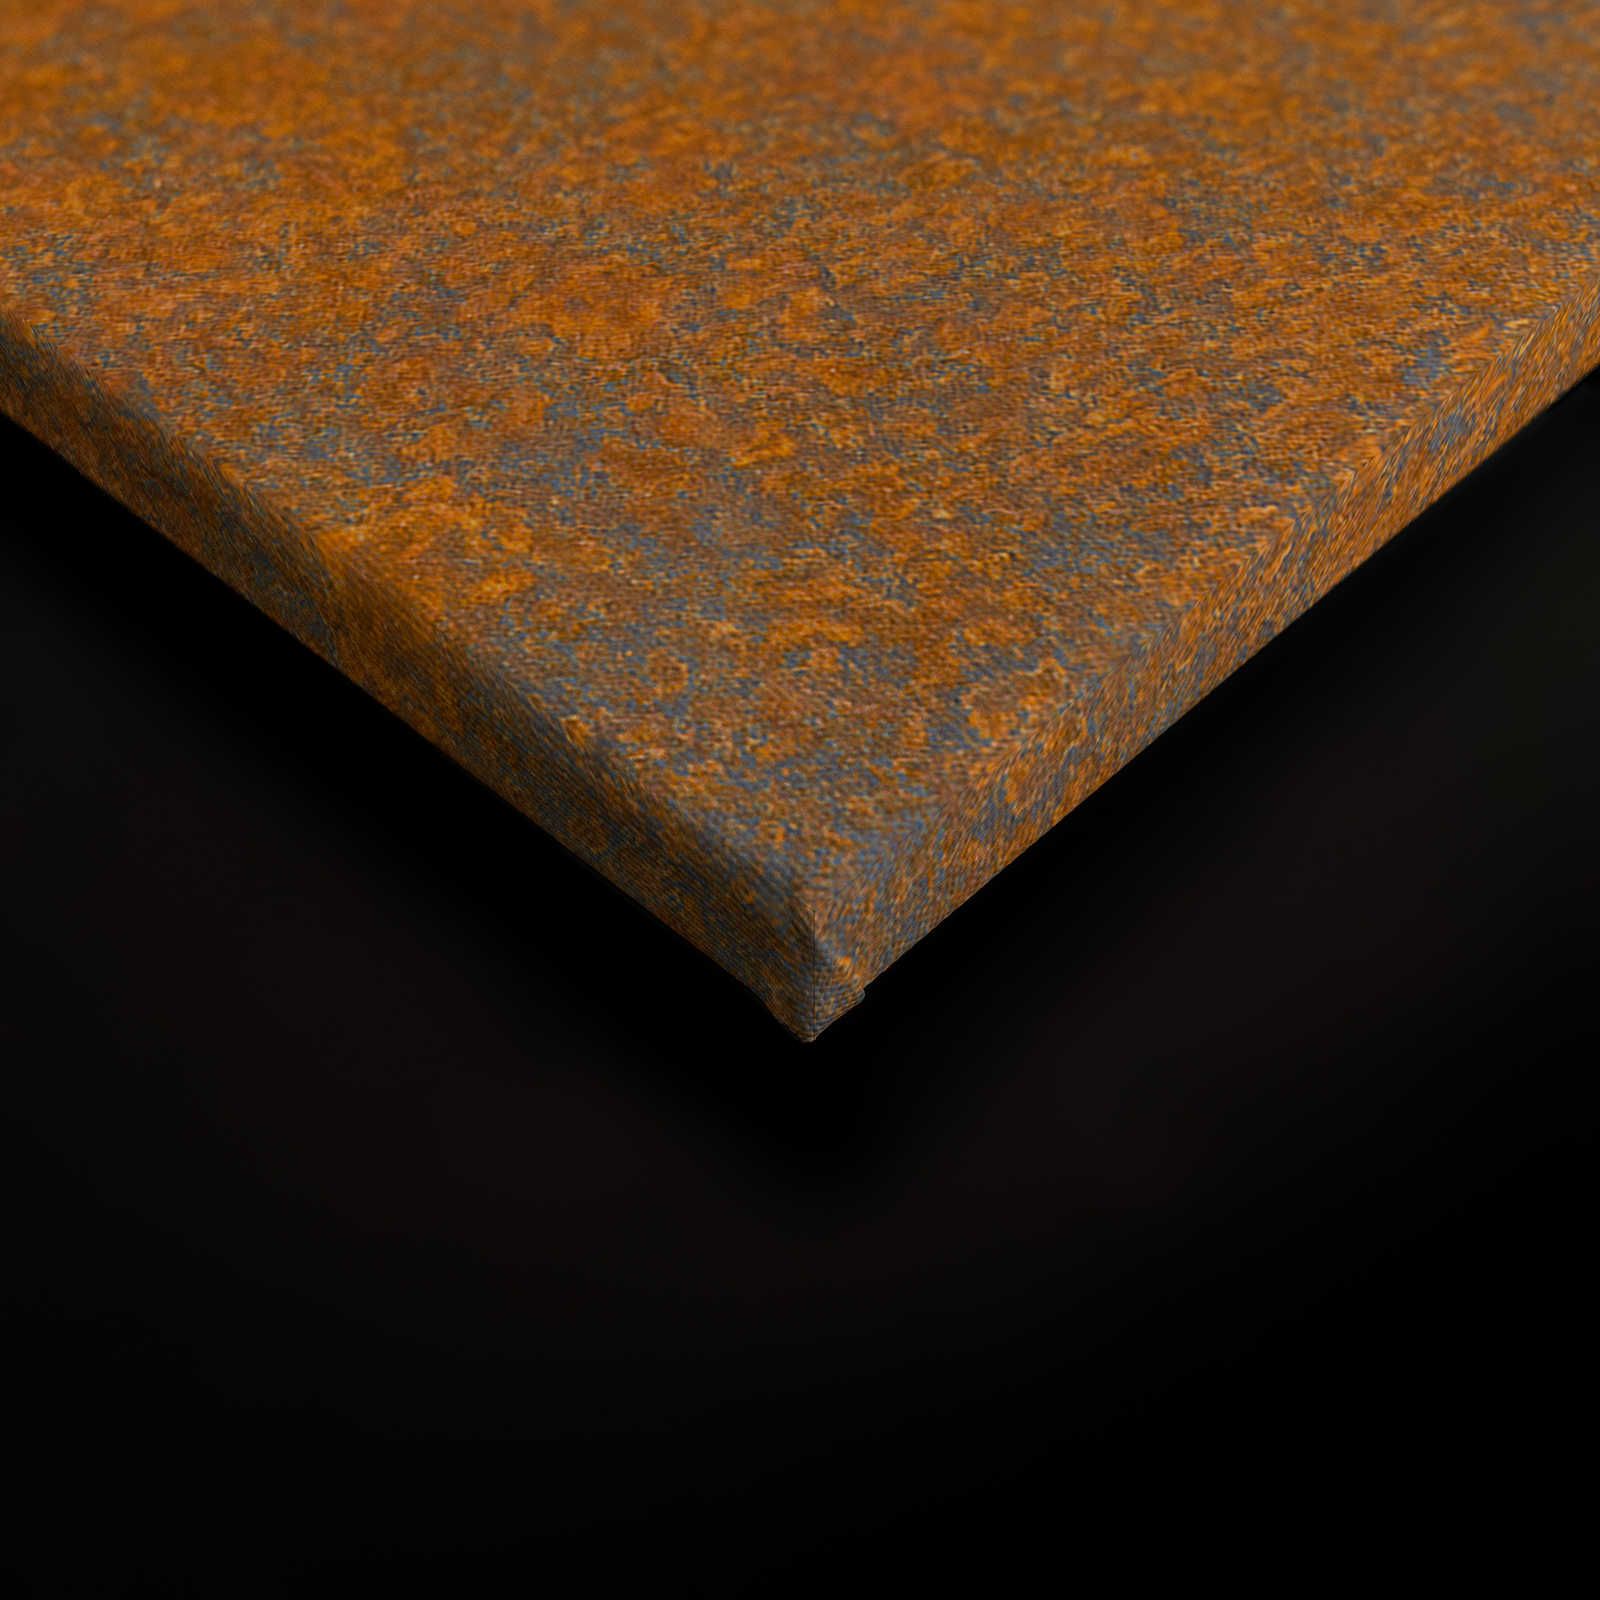             Toile aspect rouille orange marron avec look usé - 0,90 m x 0,60 m
        